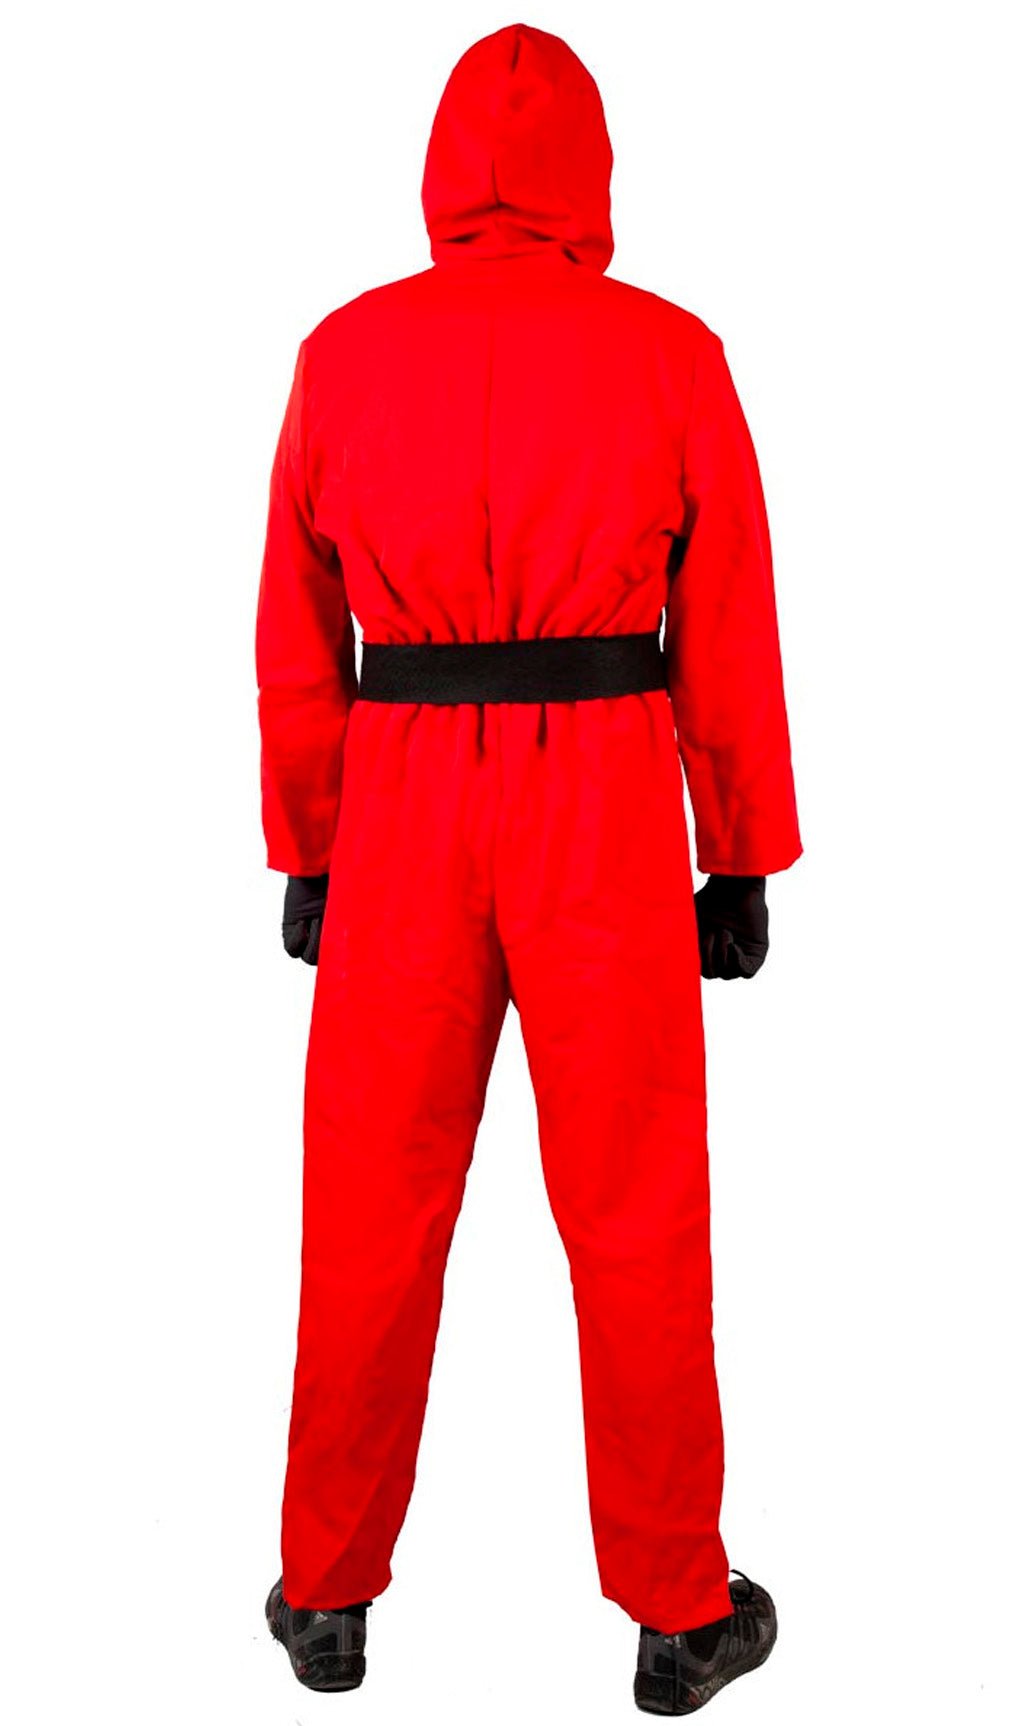 Disfraz de bombero rojo para mujer por 23,50 €